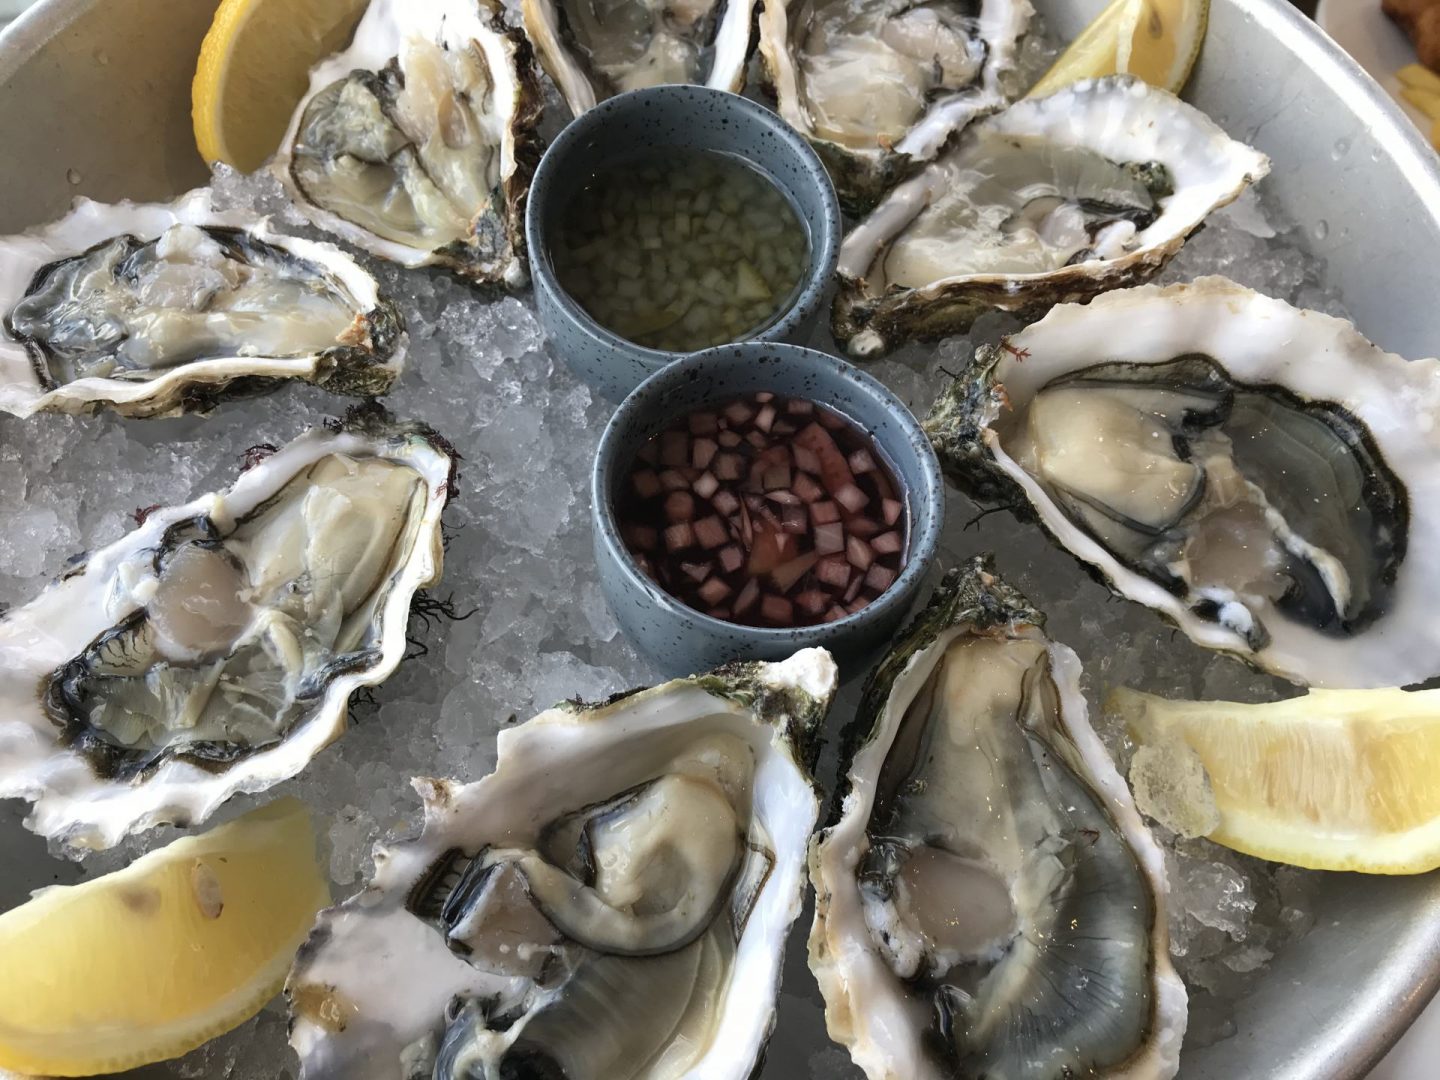 Erfahrung Bewertung Kritik Oase Domburg frische Austern Foodblog Sternestulle